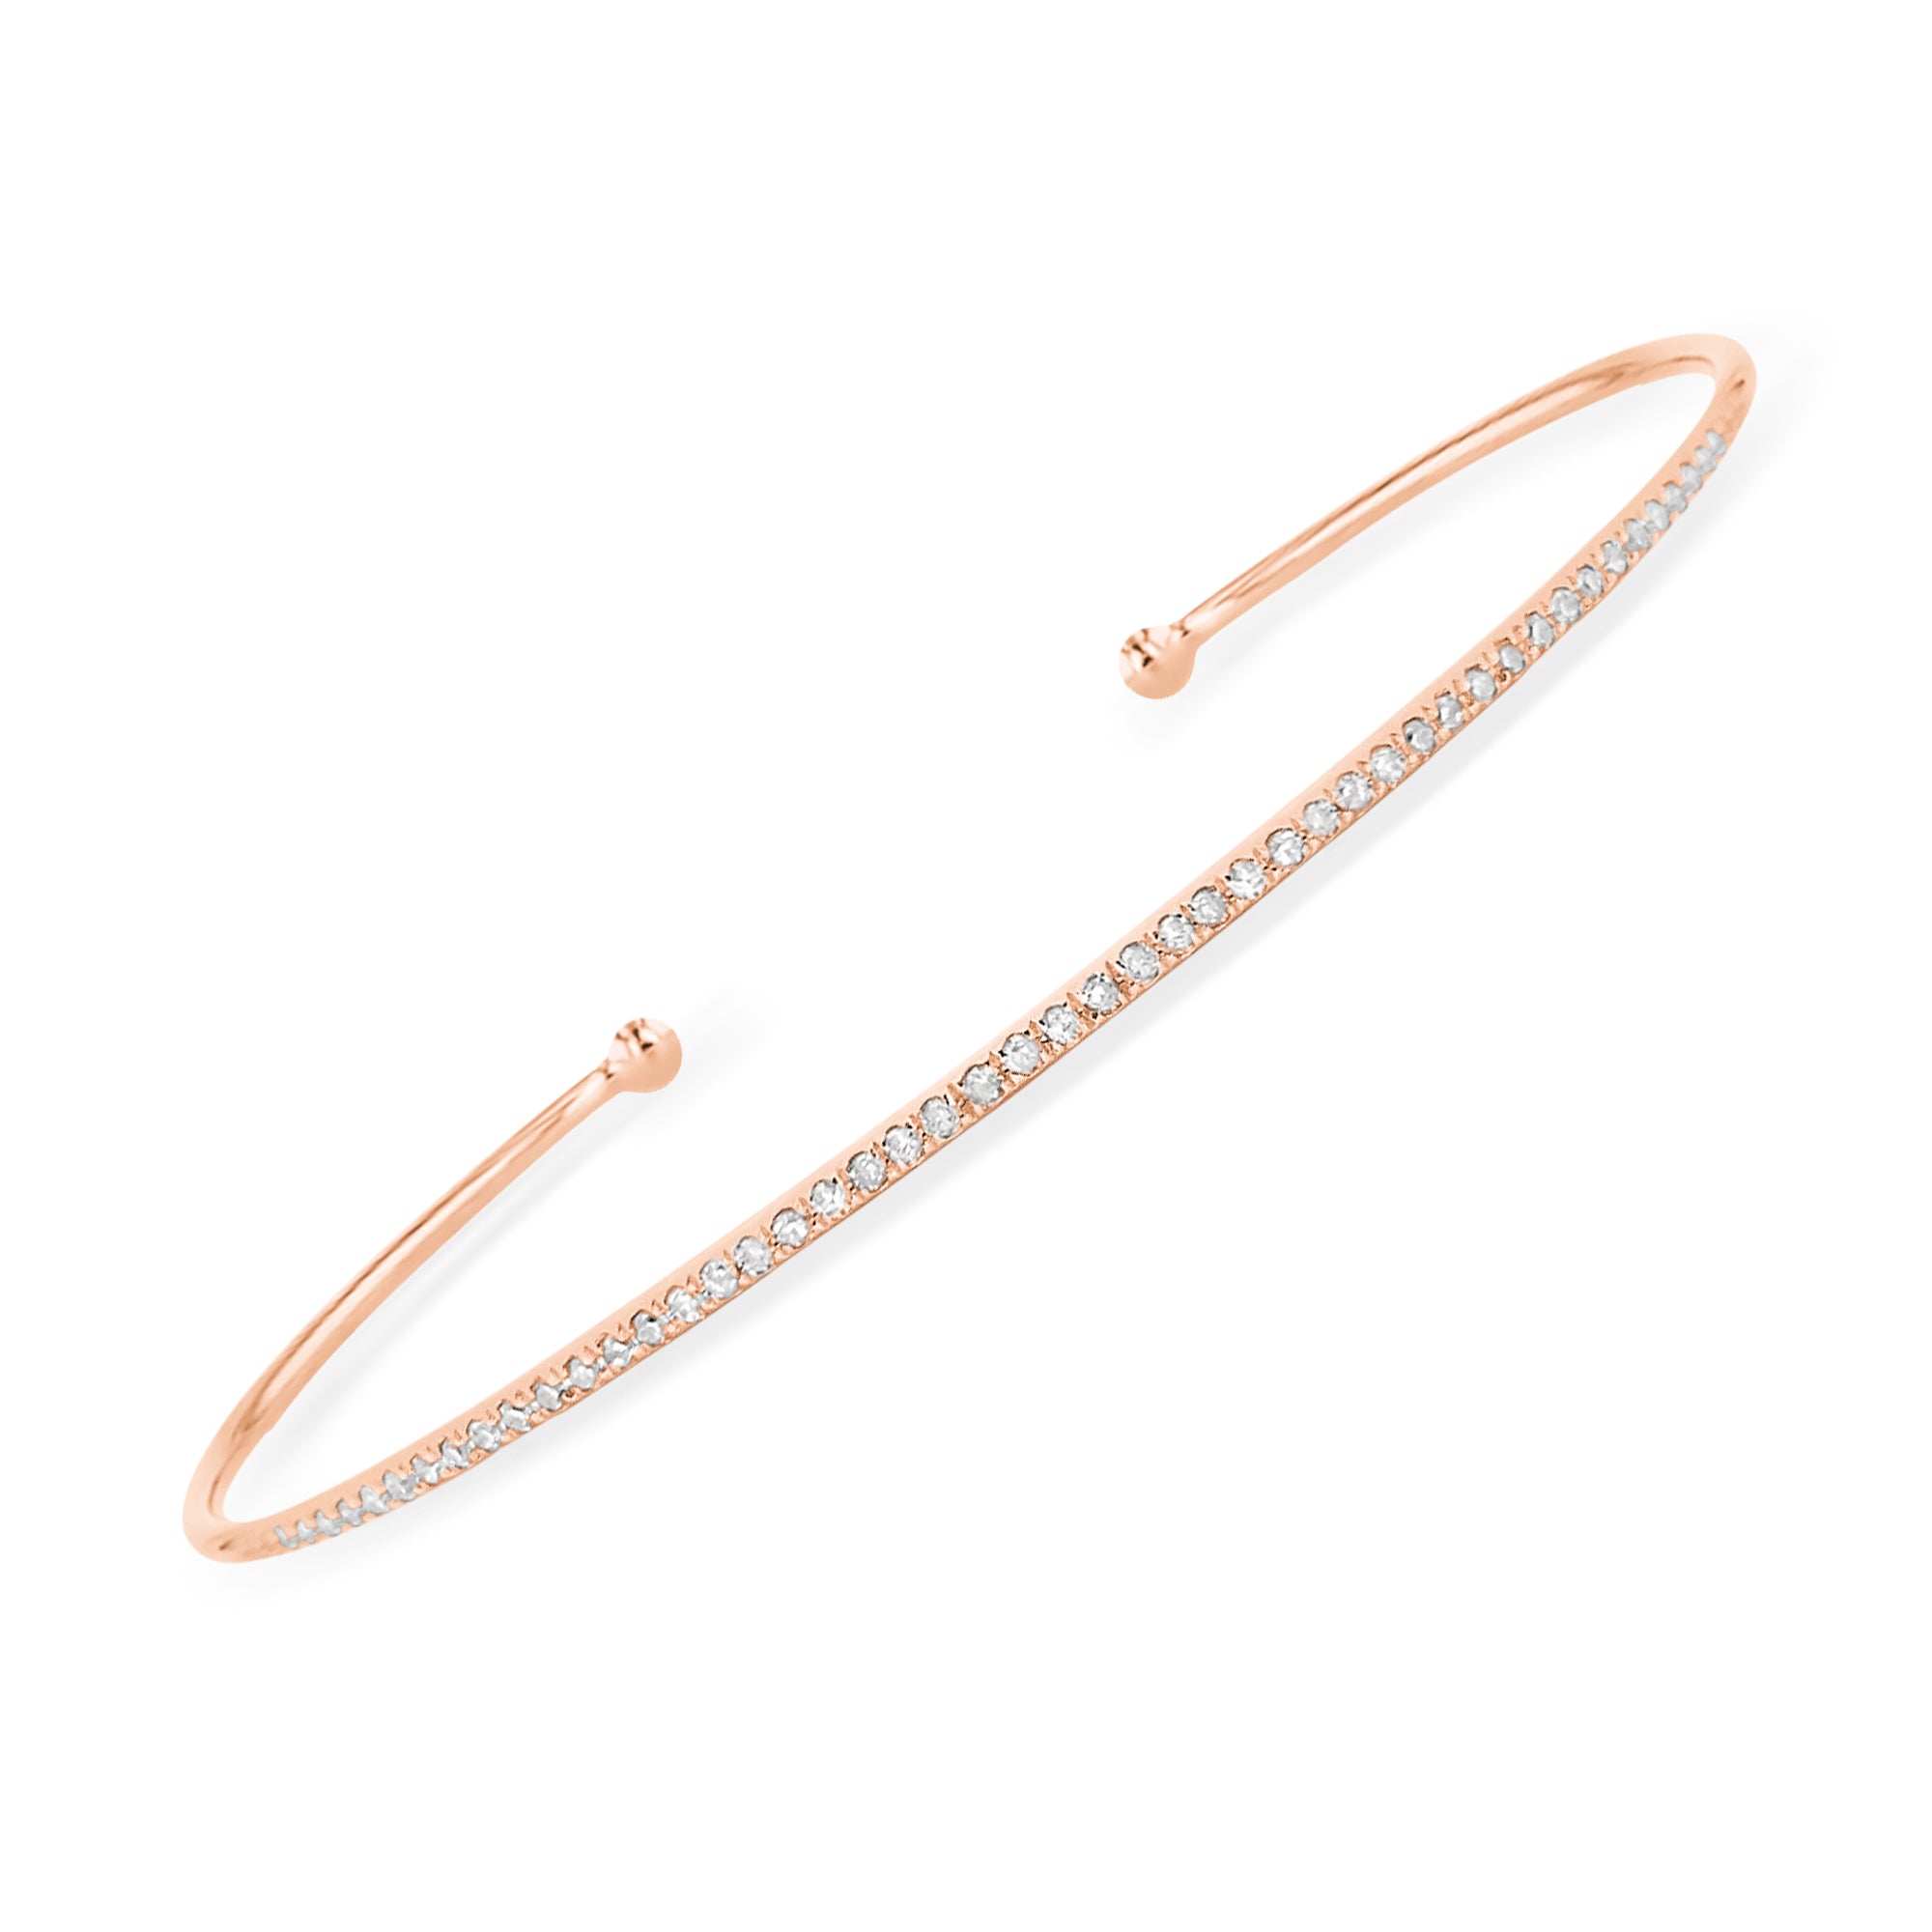 Bracelets, Bracelets for Women - The M Jewelers